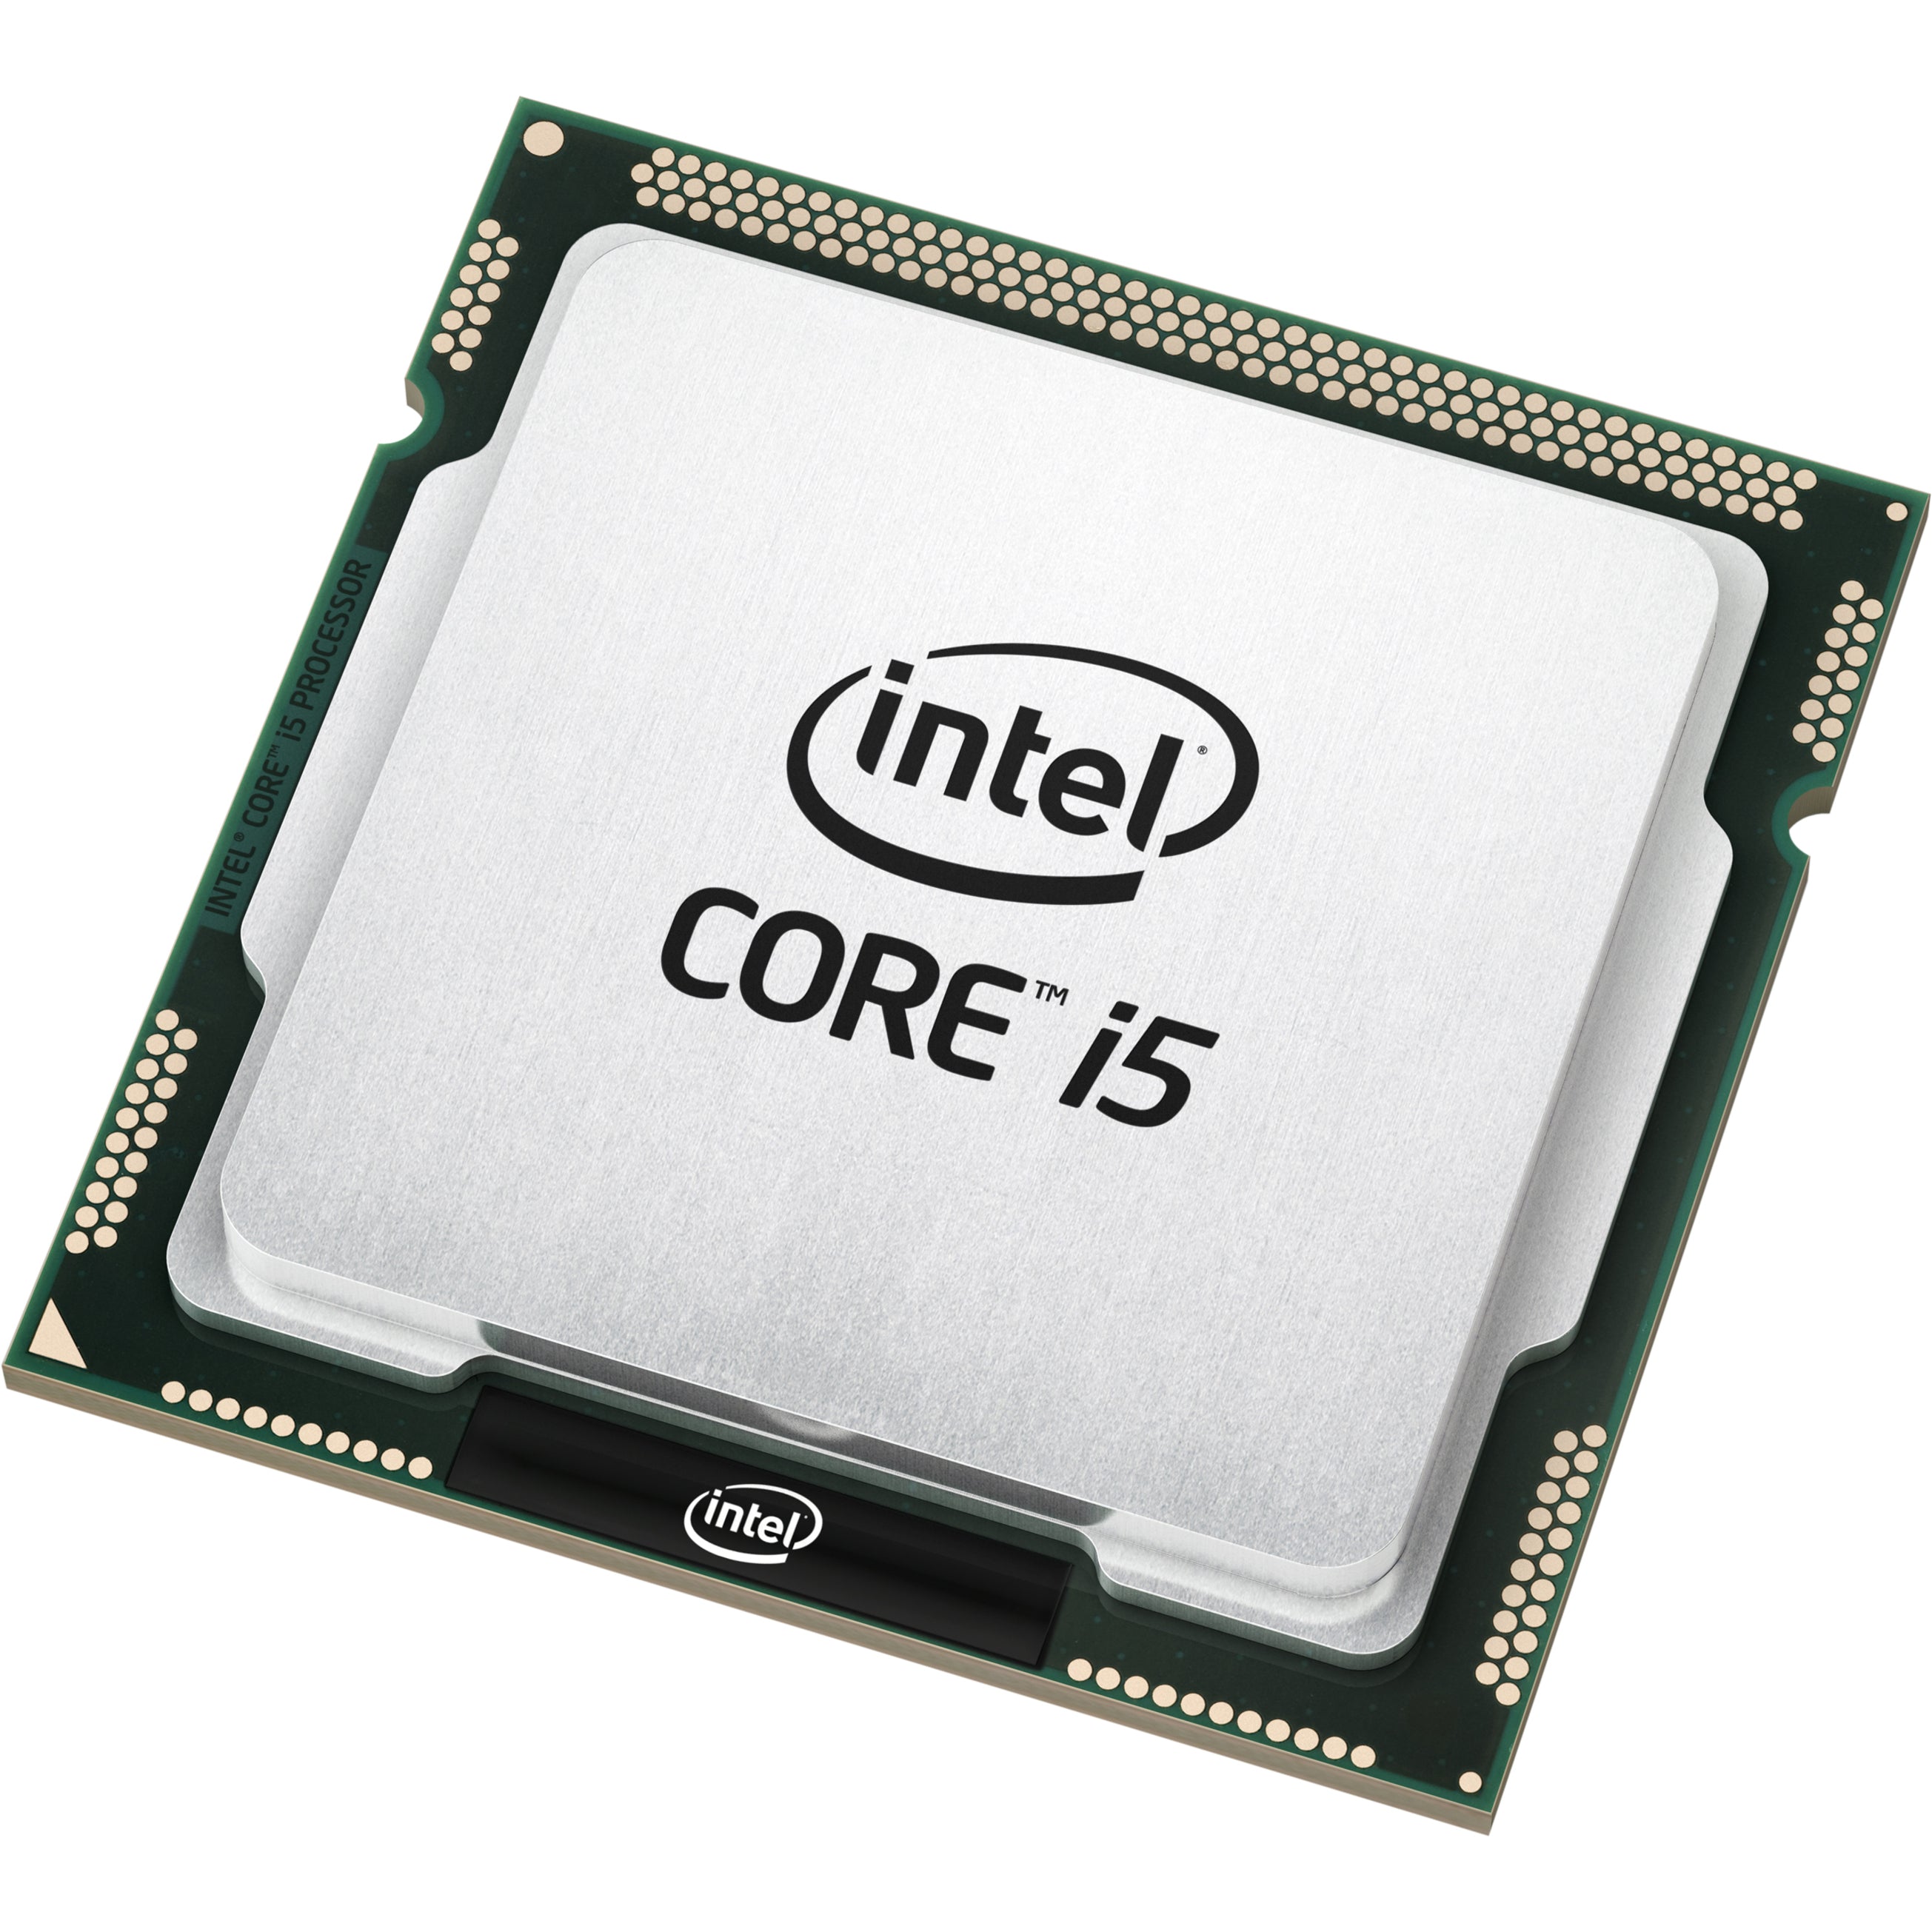 Intel-IMSourcing BX80646I54570 Core i5 Quad-core i5-4570 3.2GHz Desktop Processor, 6MB LGA1151, HD Graphics 4600, 3 Monitors Supported